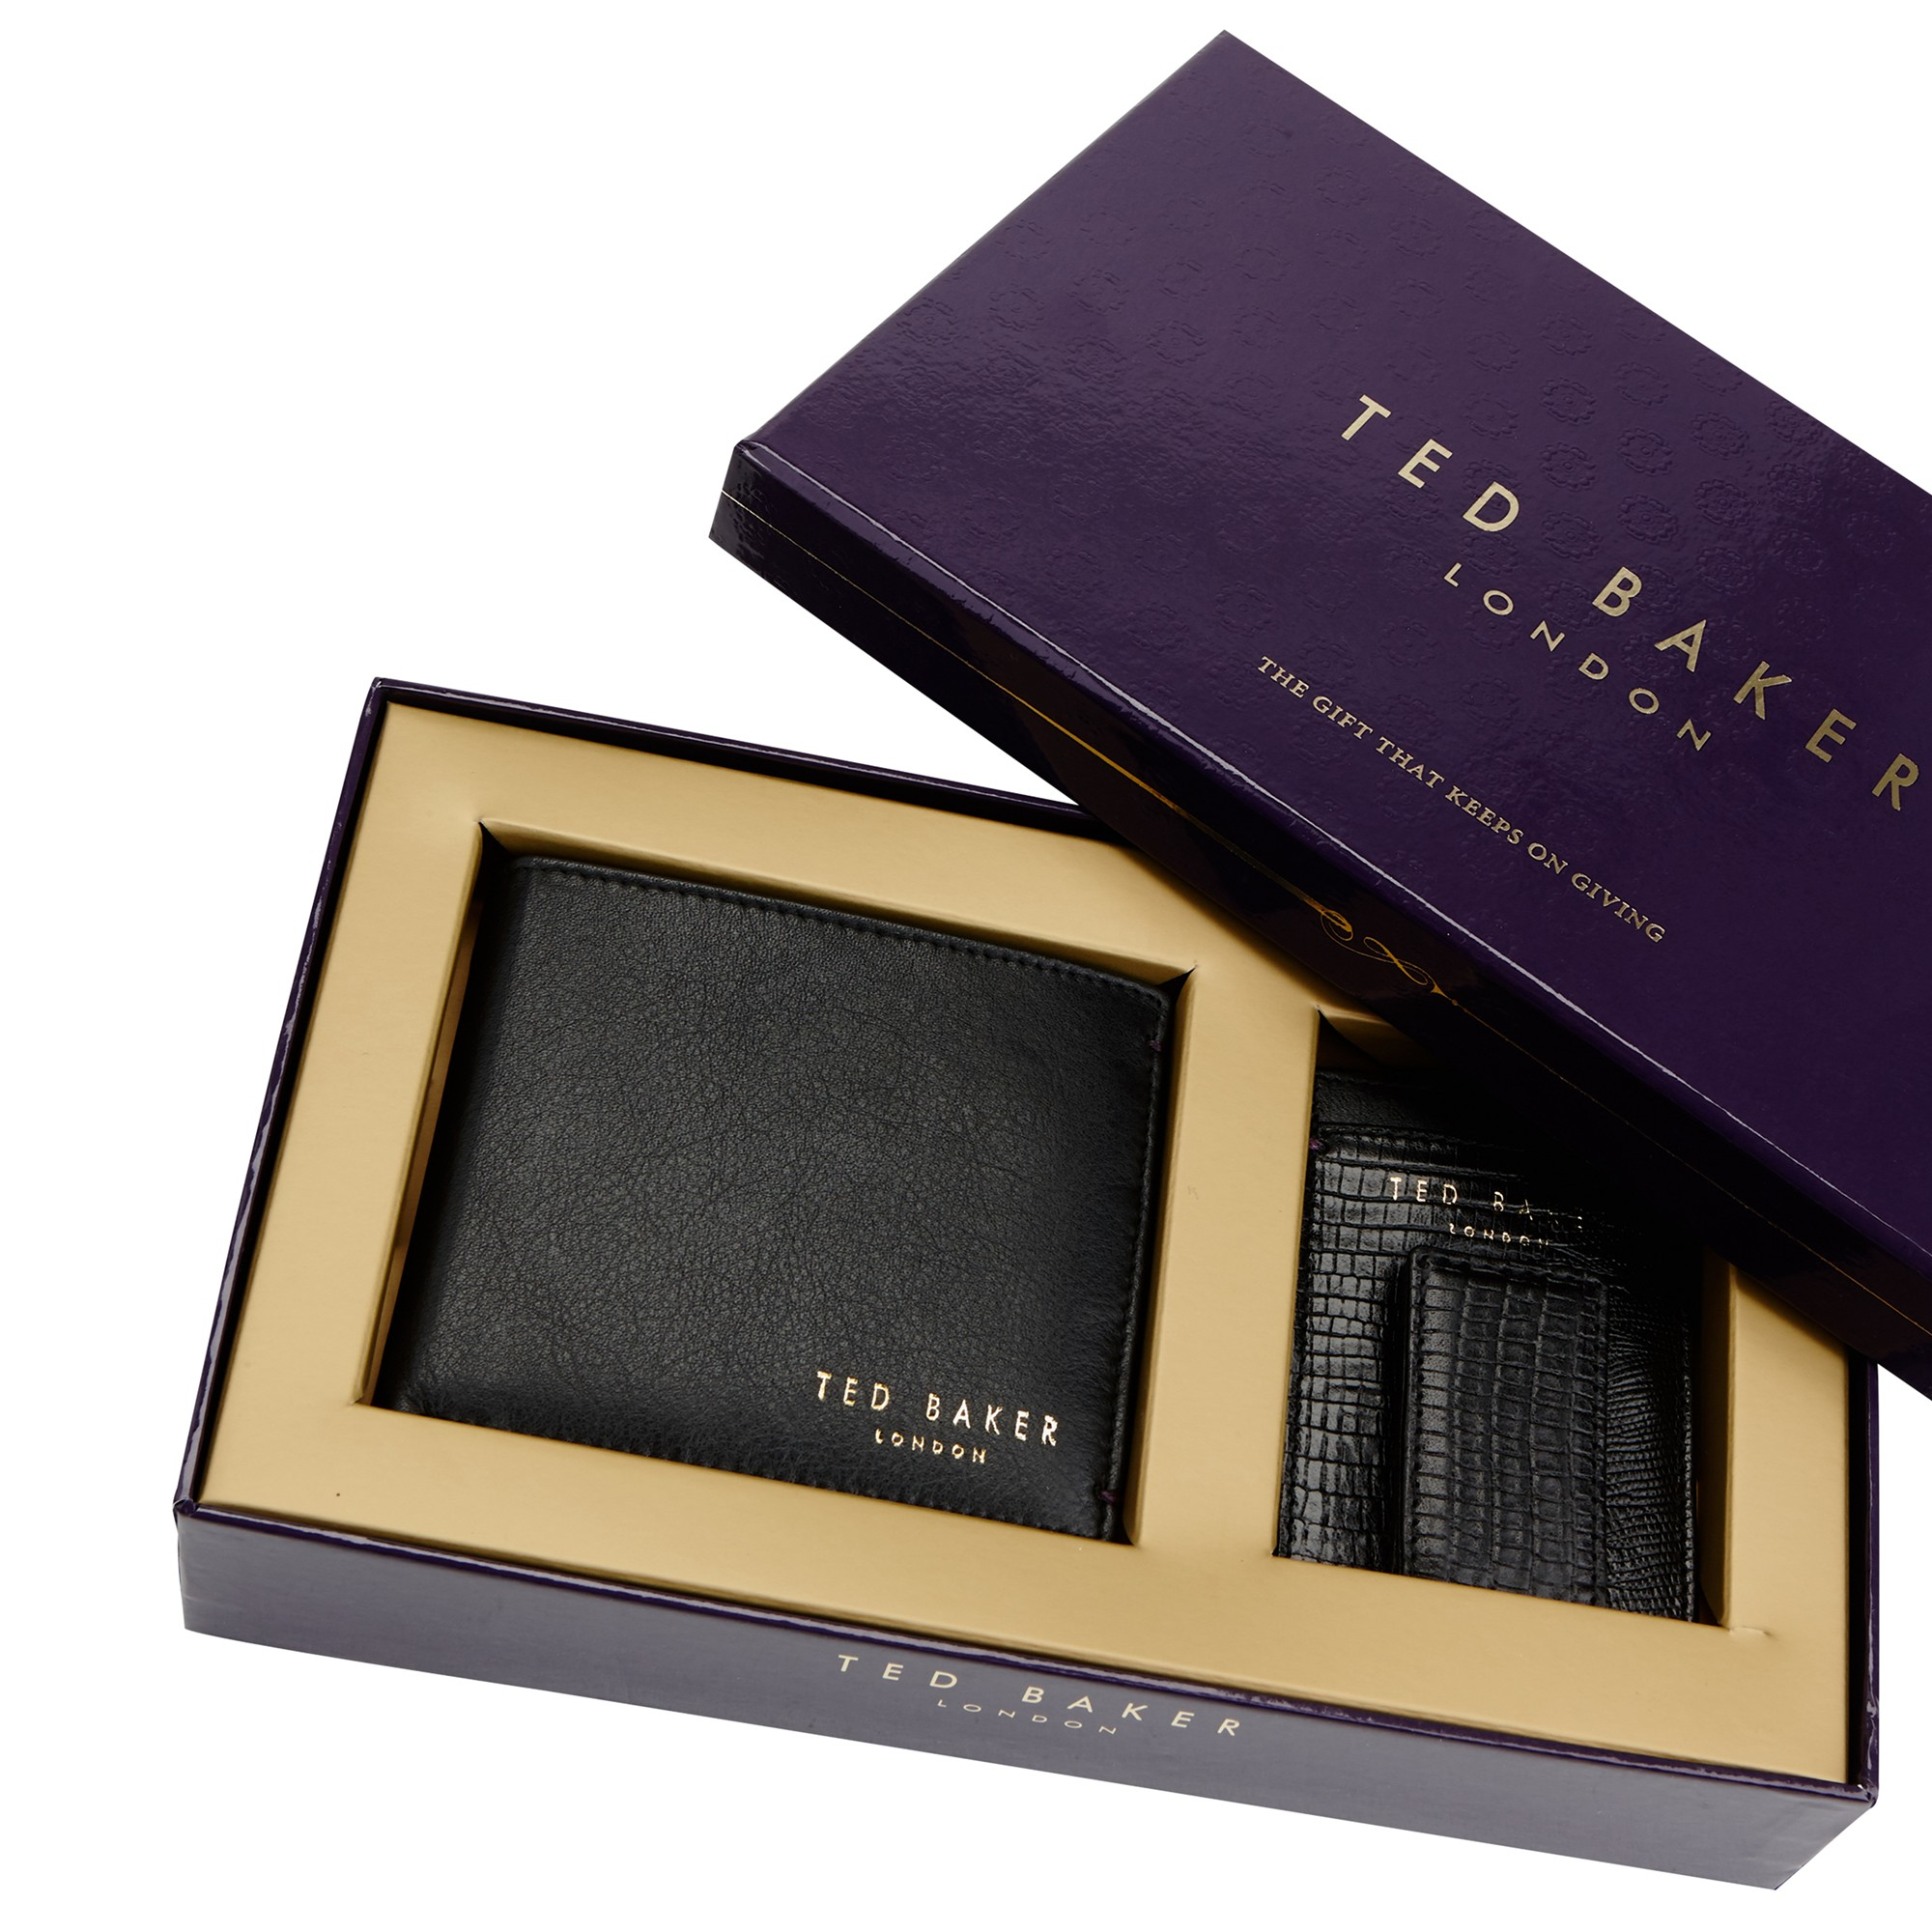 Ted Baker Leather Wallet & Card Holder Gift Set in Black for Men - Lyst